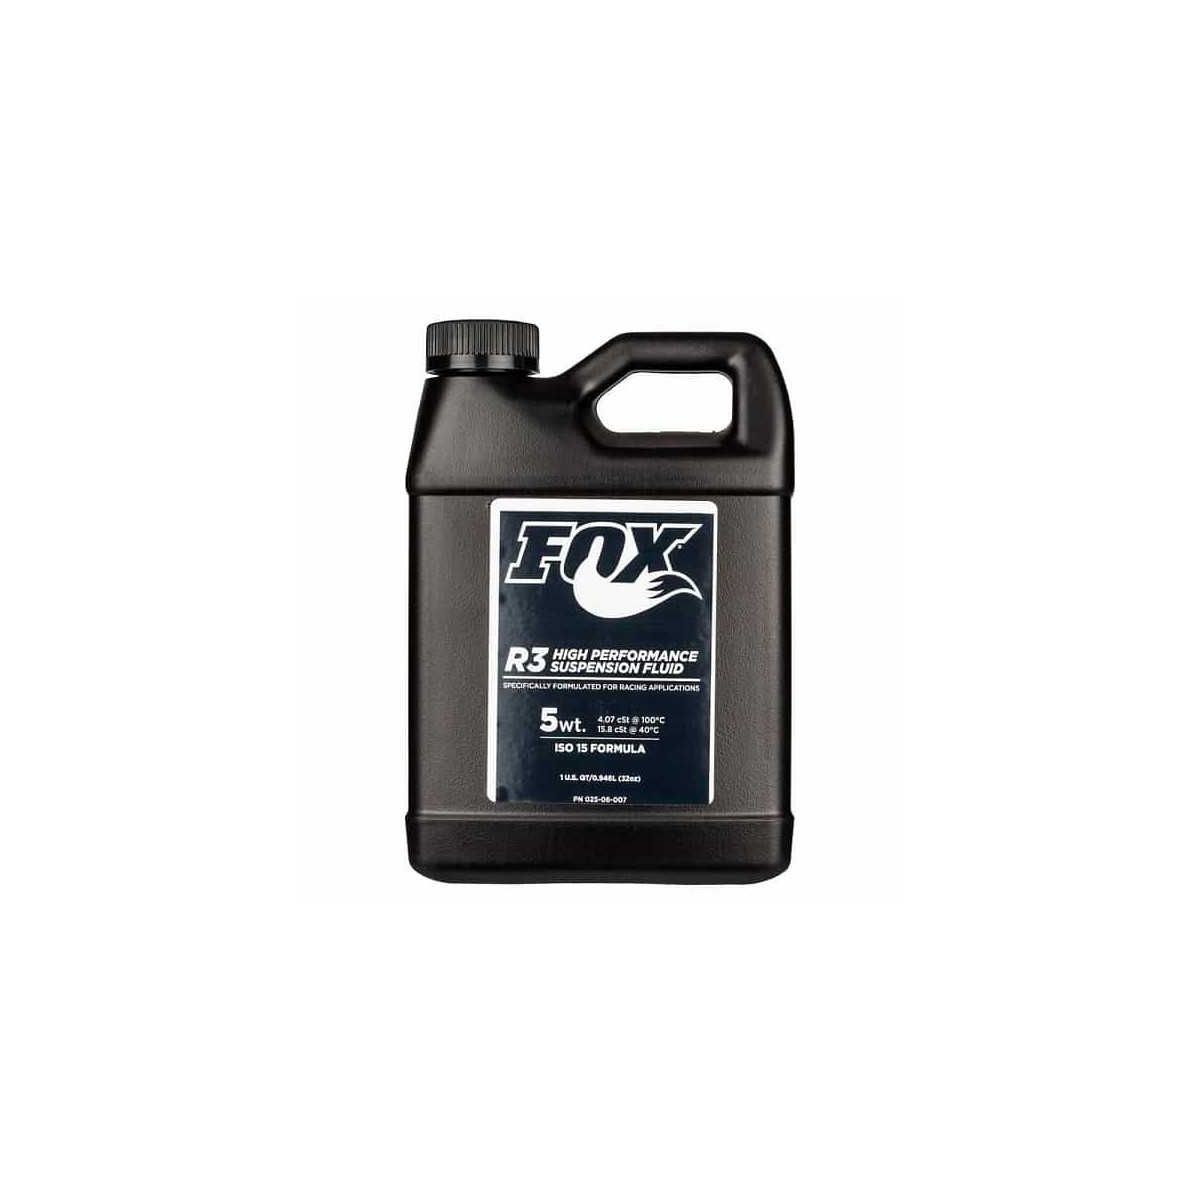 Liquido de suspensiones Fox fluid R3 5wt 15 bote de 1 litro | amortiguadores | horquillas | taller